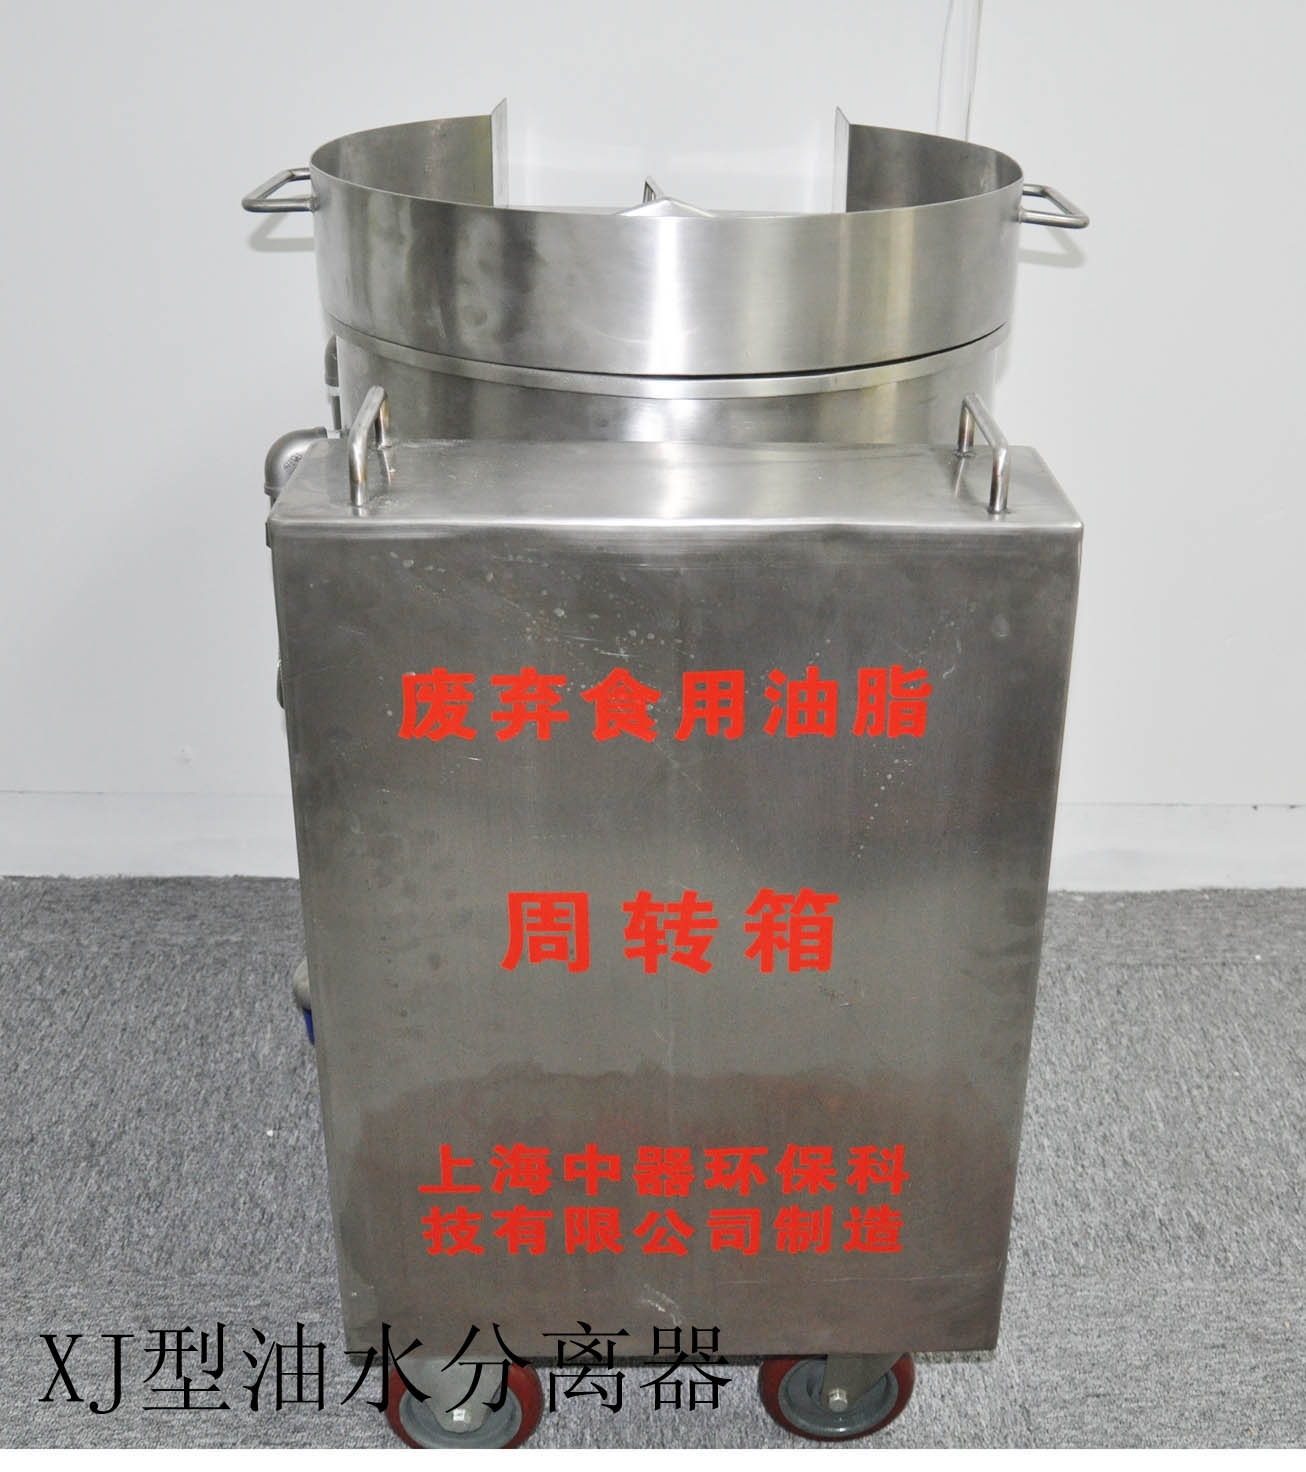 上海手推车型油水分离器上海手推车型油水分离器火锅店专用、可移动型、报价低